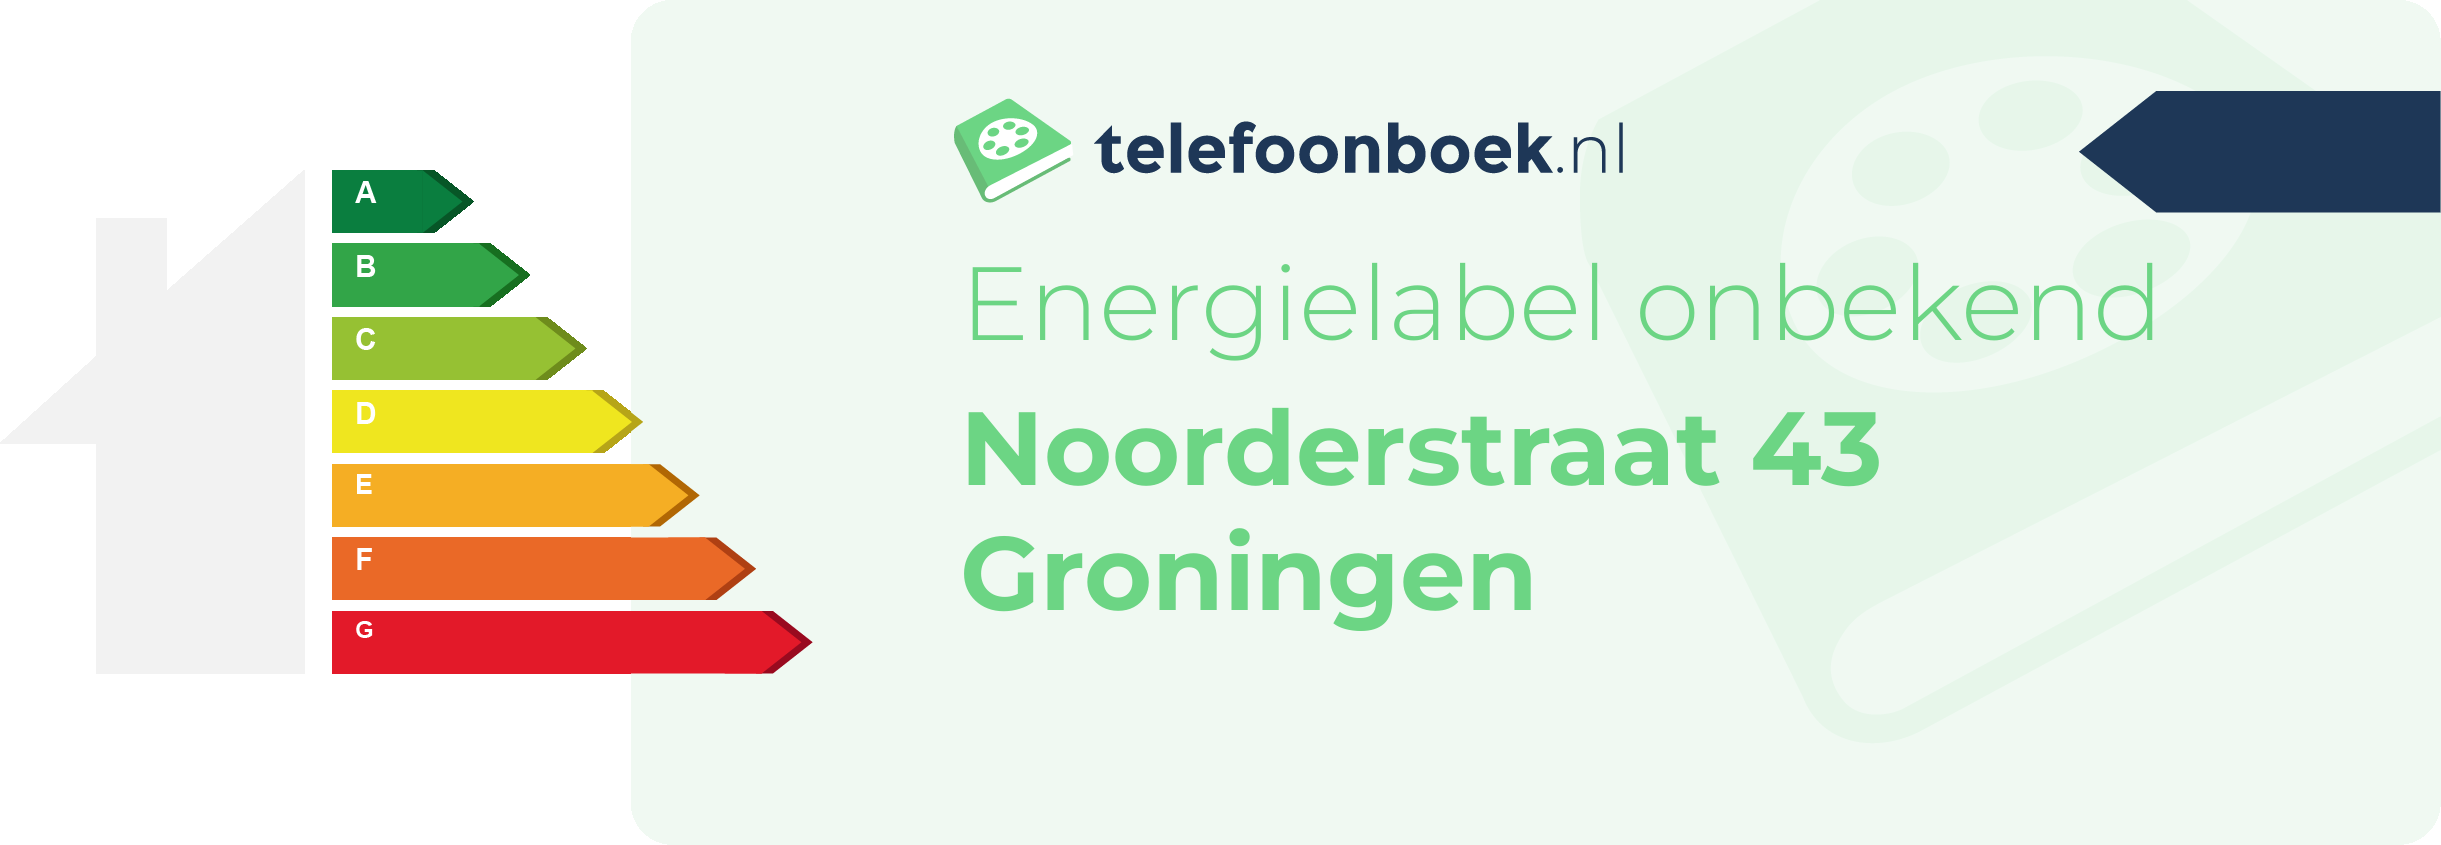 Energielabel Noorderstraat 43 Groningen